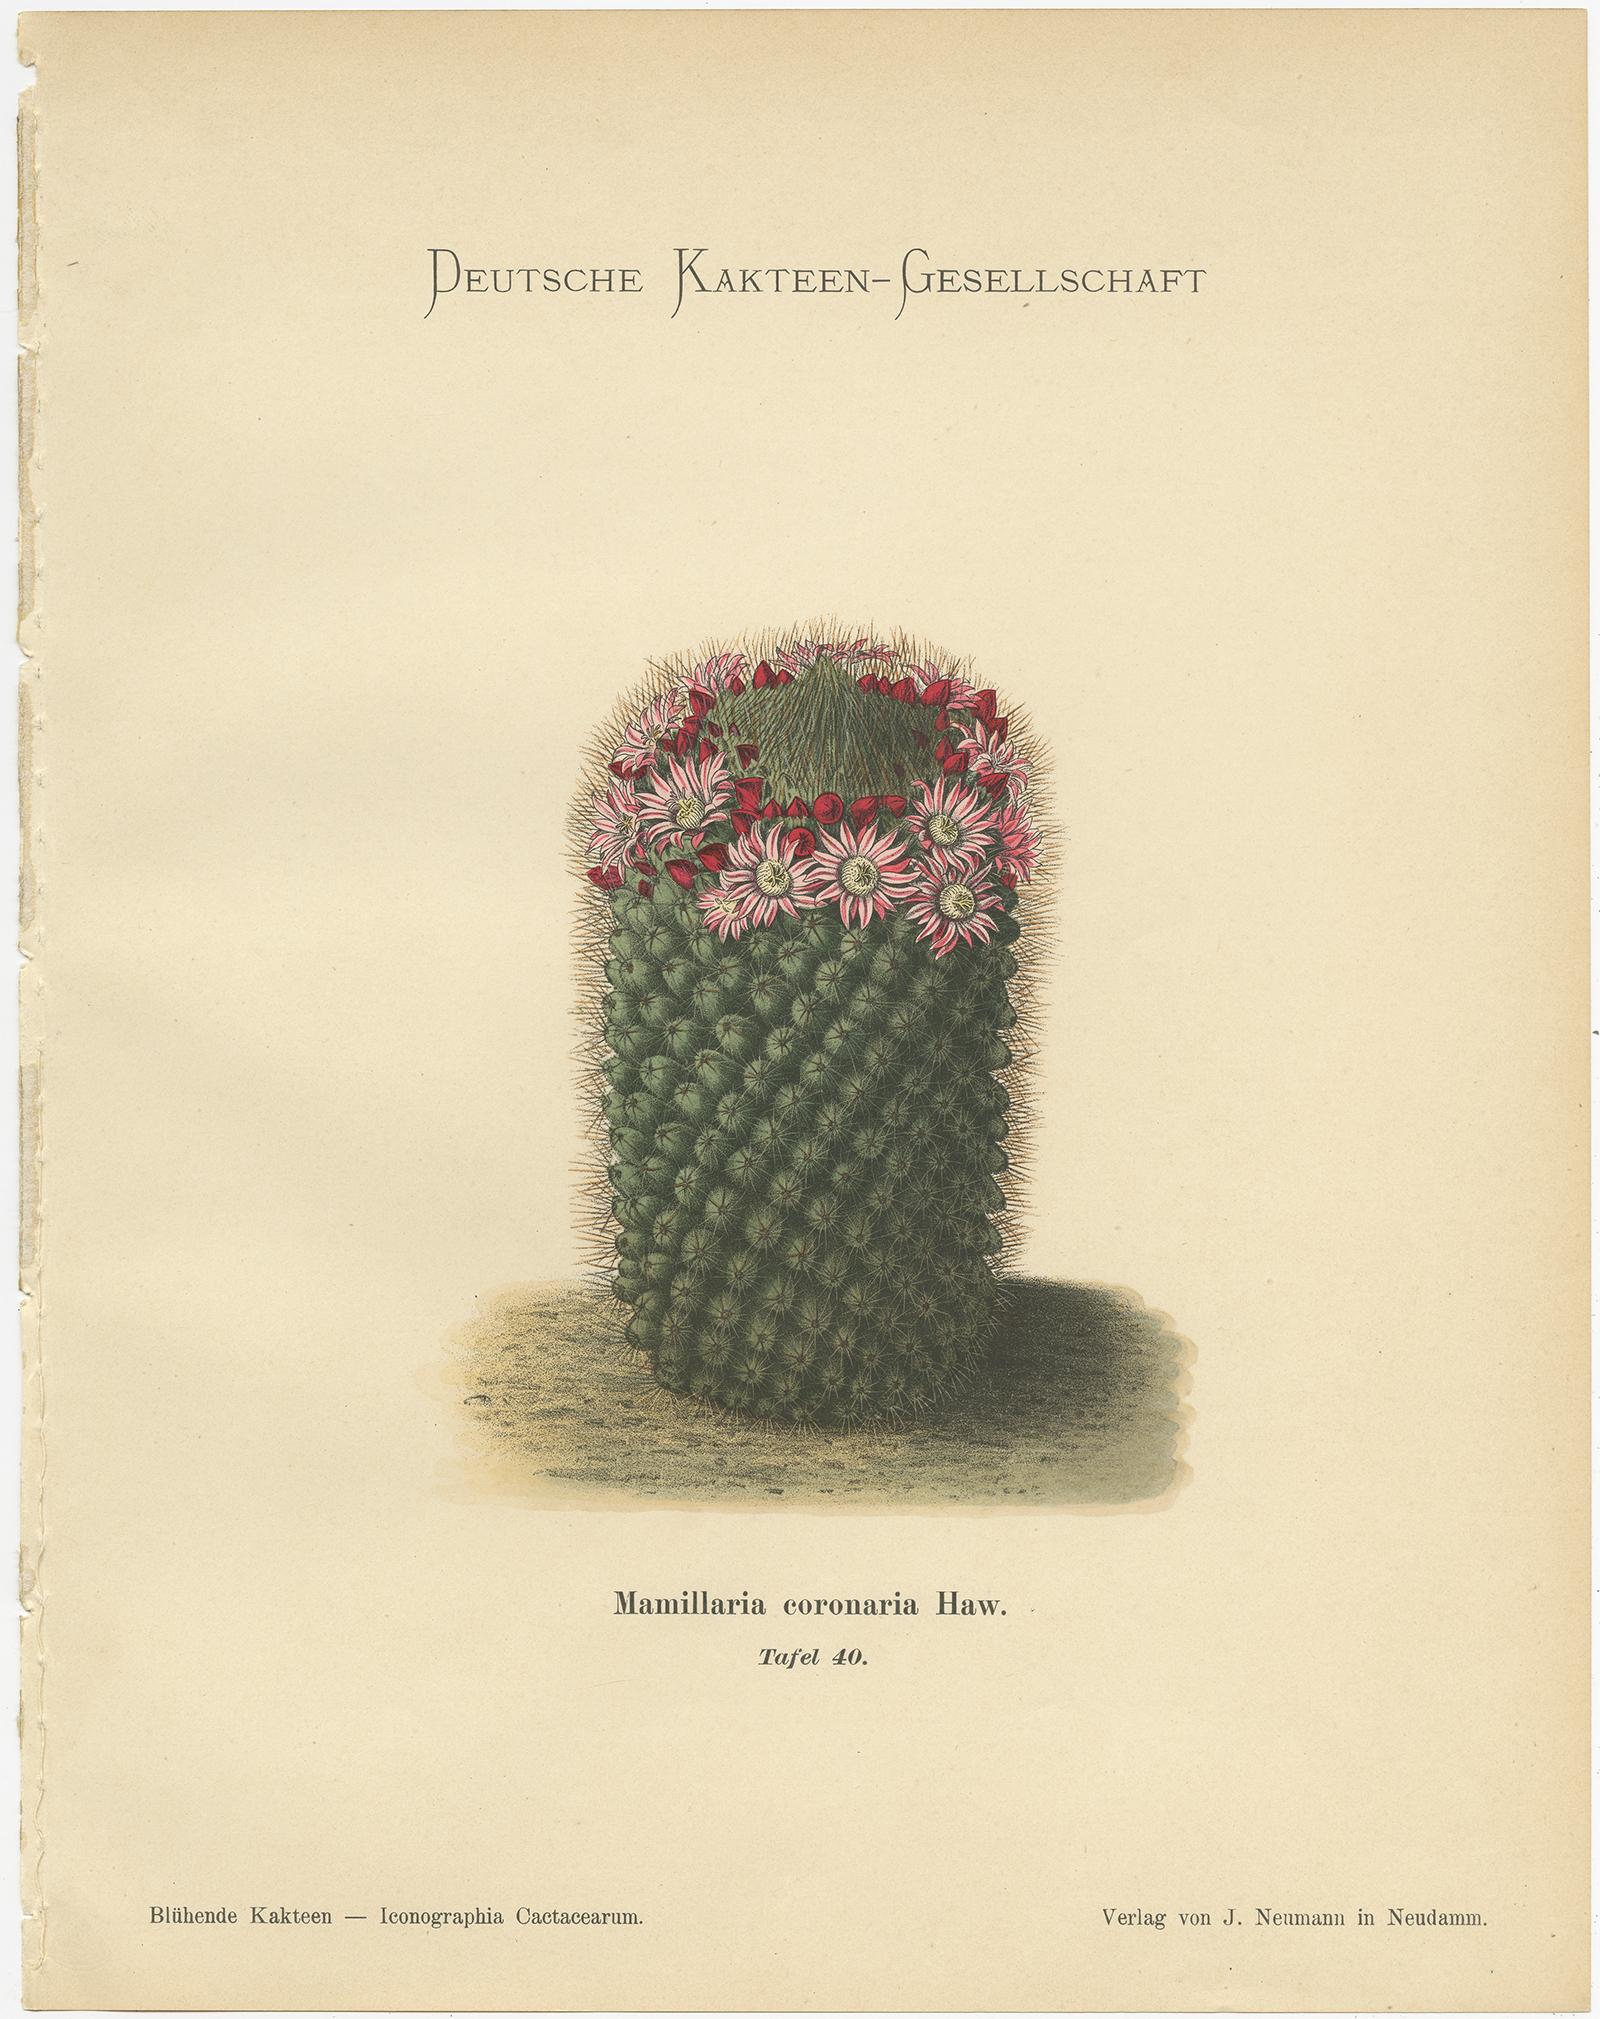 Paper Set of 4 Antique Cactus Prints, Echinocereus Berlandieri, Schumann, circa 1900